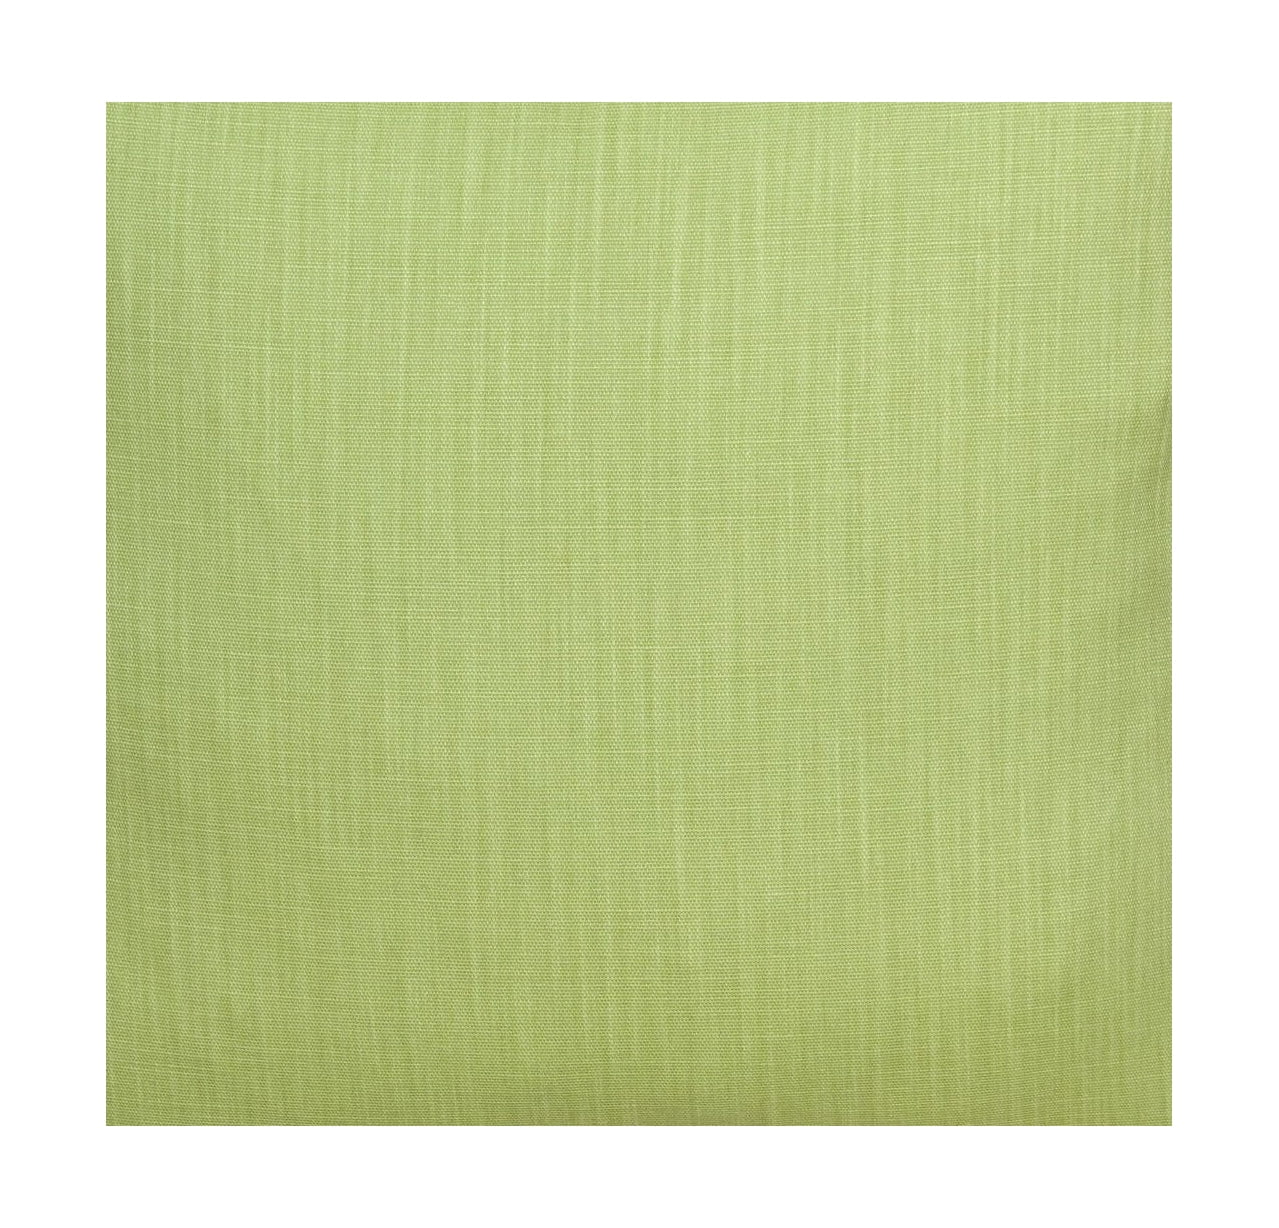 Largeur de tissu Spira Klotz 150 cm (prix par mètre), vert clair